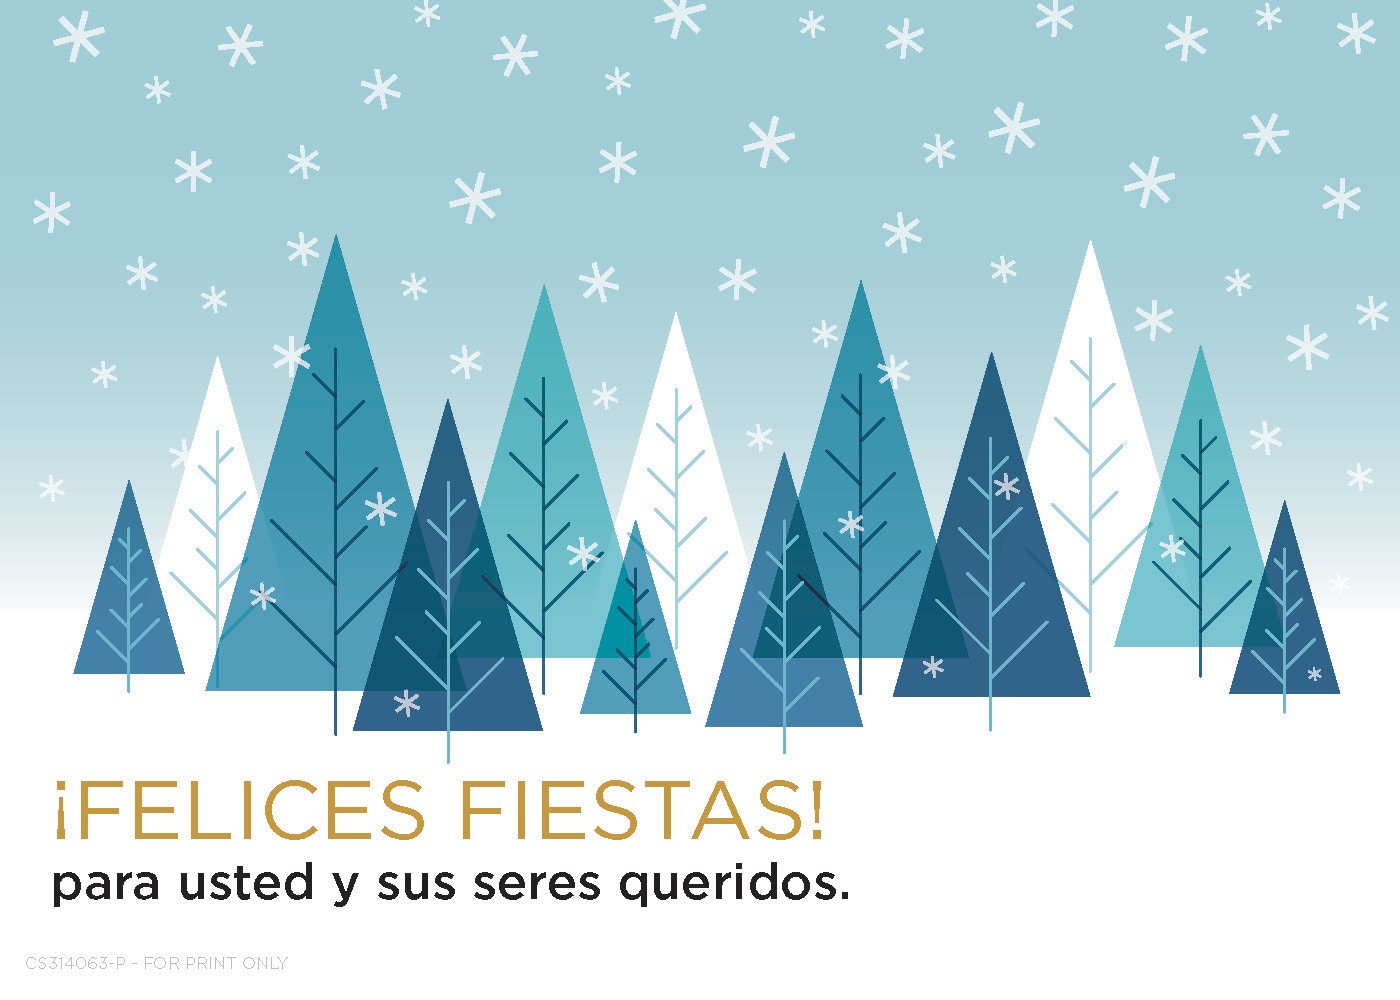 Un postal de festivos de invierno con texto que dice 'Felices Fiestas para usted y sus seres queridos'